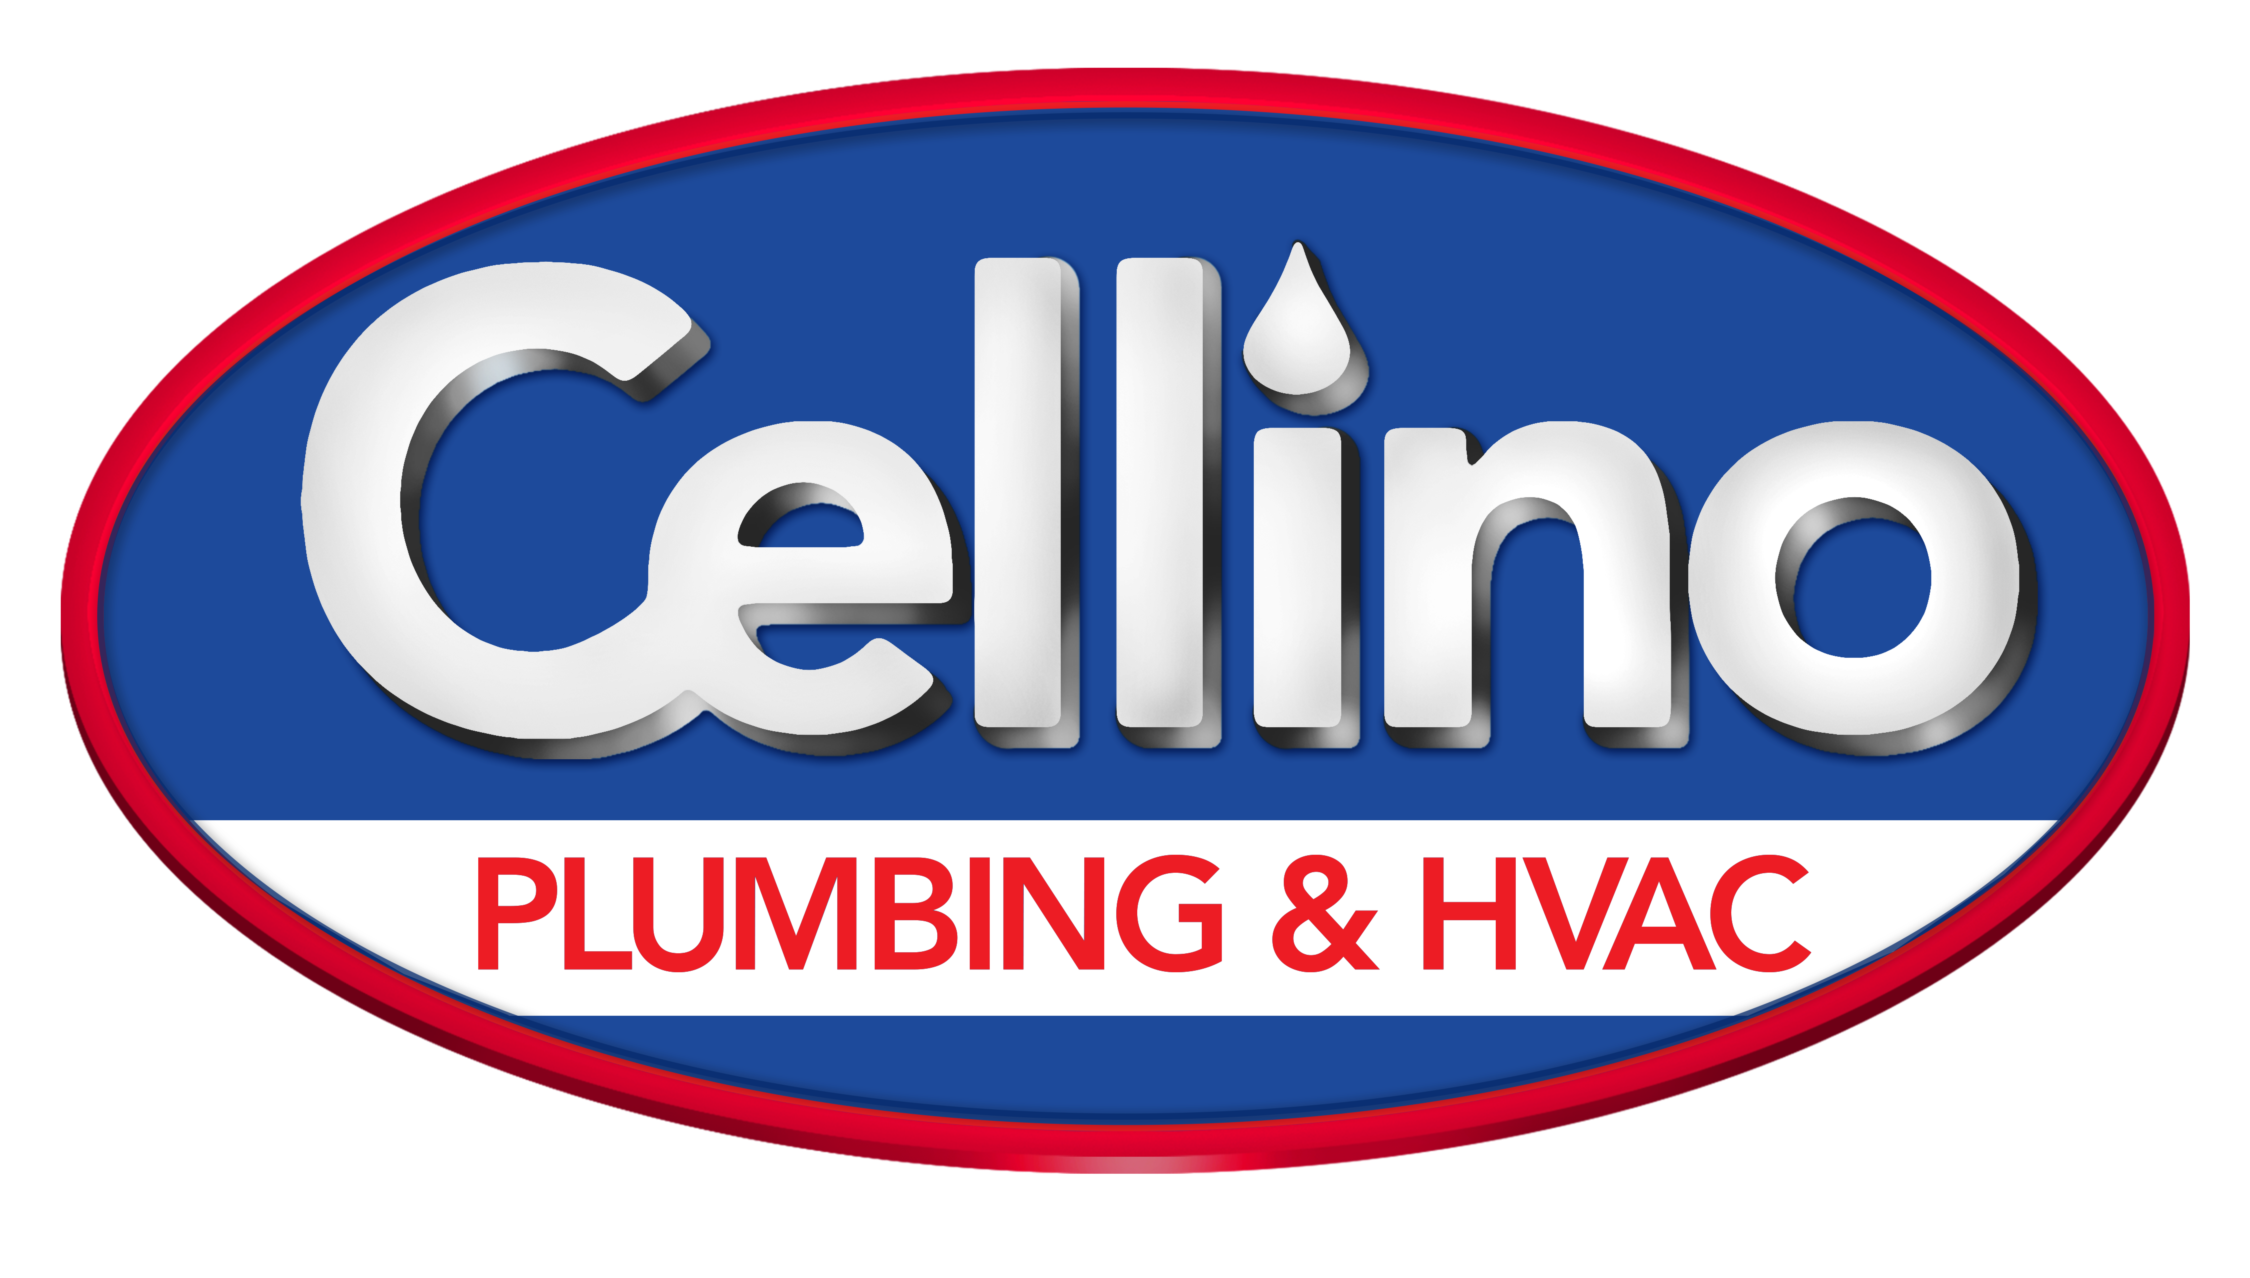 Cellino Plumbing & HVAC logo